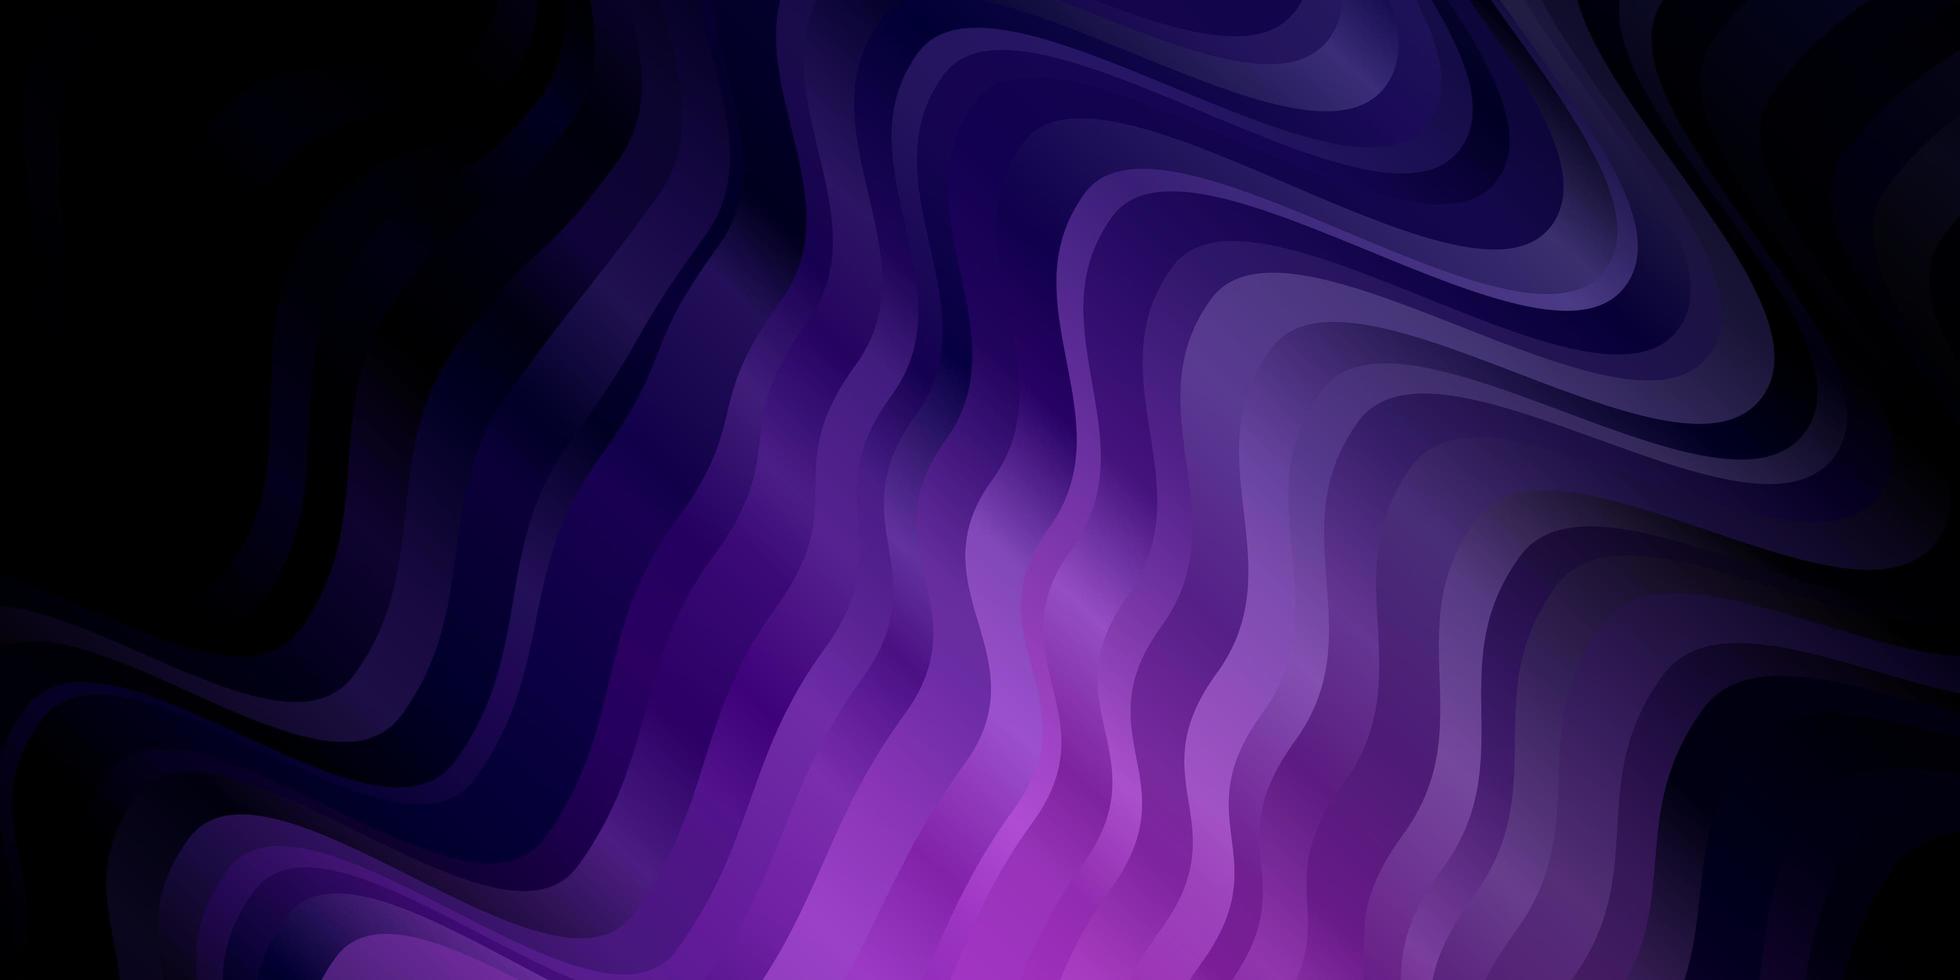 patrón de vector púrpura oscuro, rosa con líneas curvas.